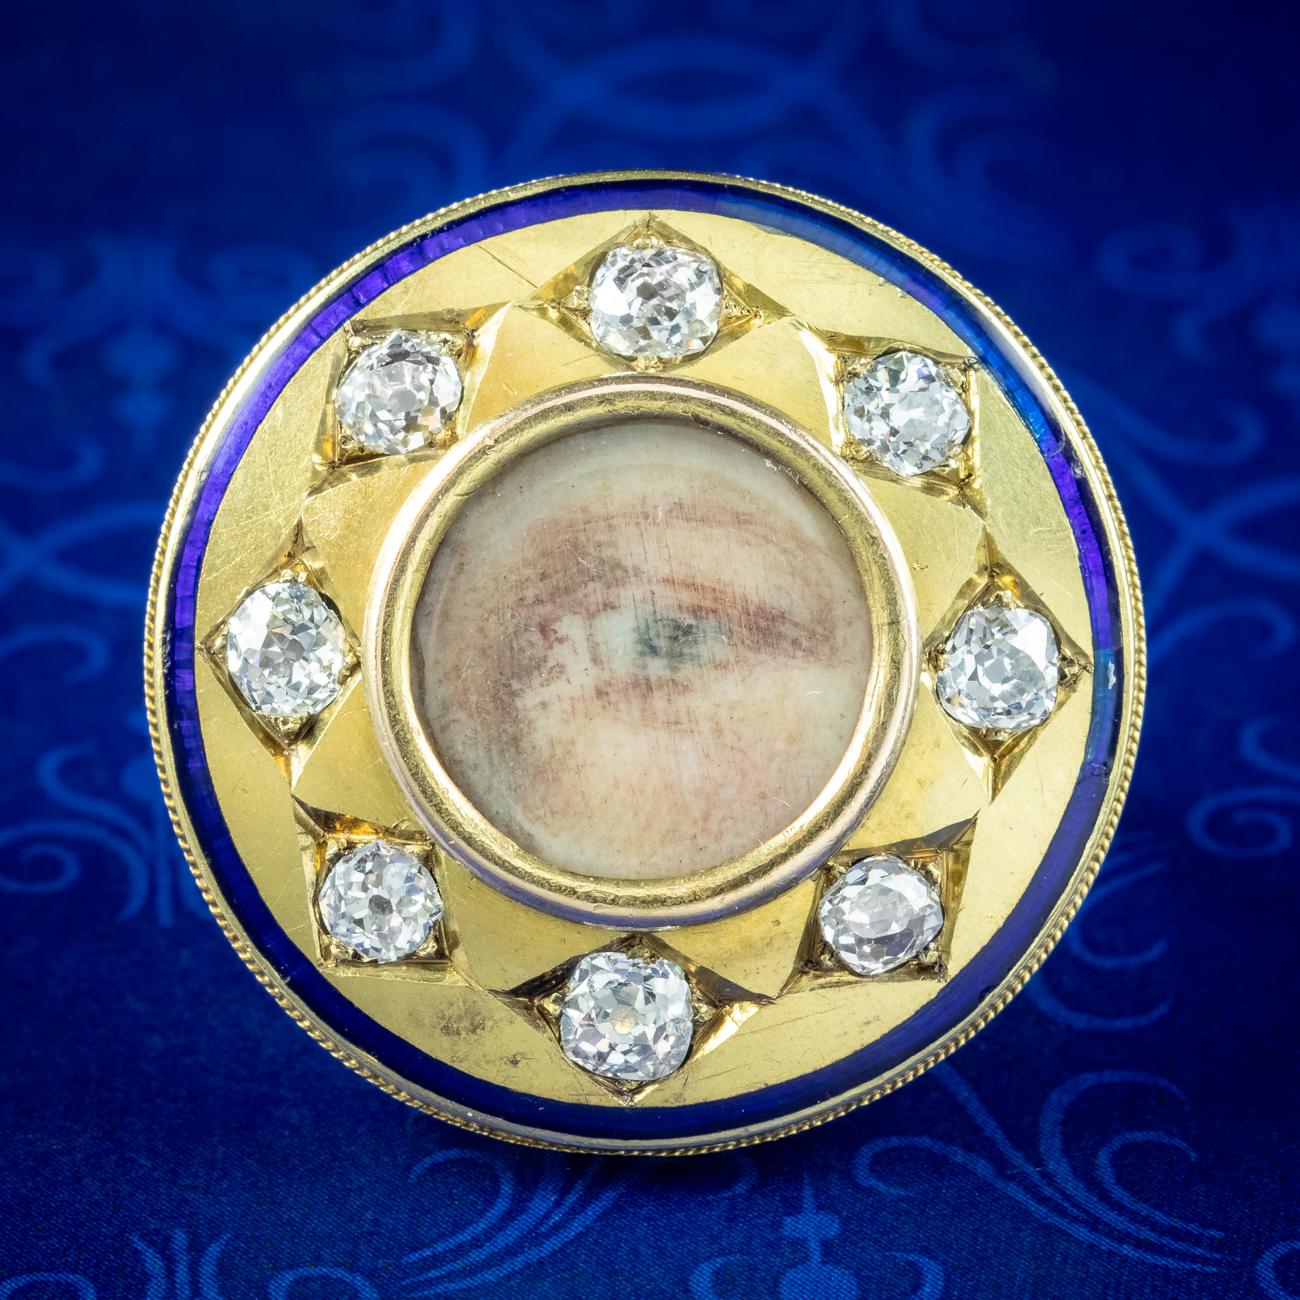 Hier haben wir einen unglaublich seltenen antiken georgianischen Ring mit einer detaillierten Augenminiatur in der Mitte, handgemalt von keinem Geringeren als Sir Edwin Henry Landseer, einem berühmten britischen Künstler, der im Laufe seines Lebens